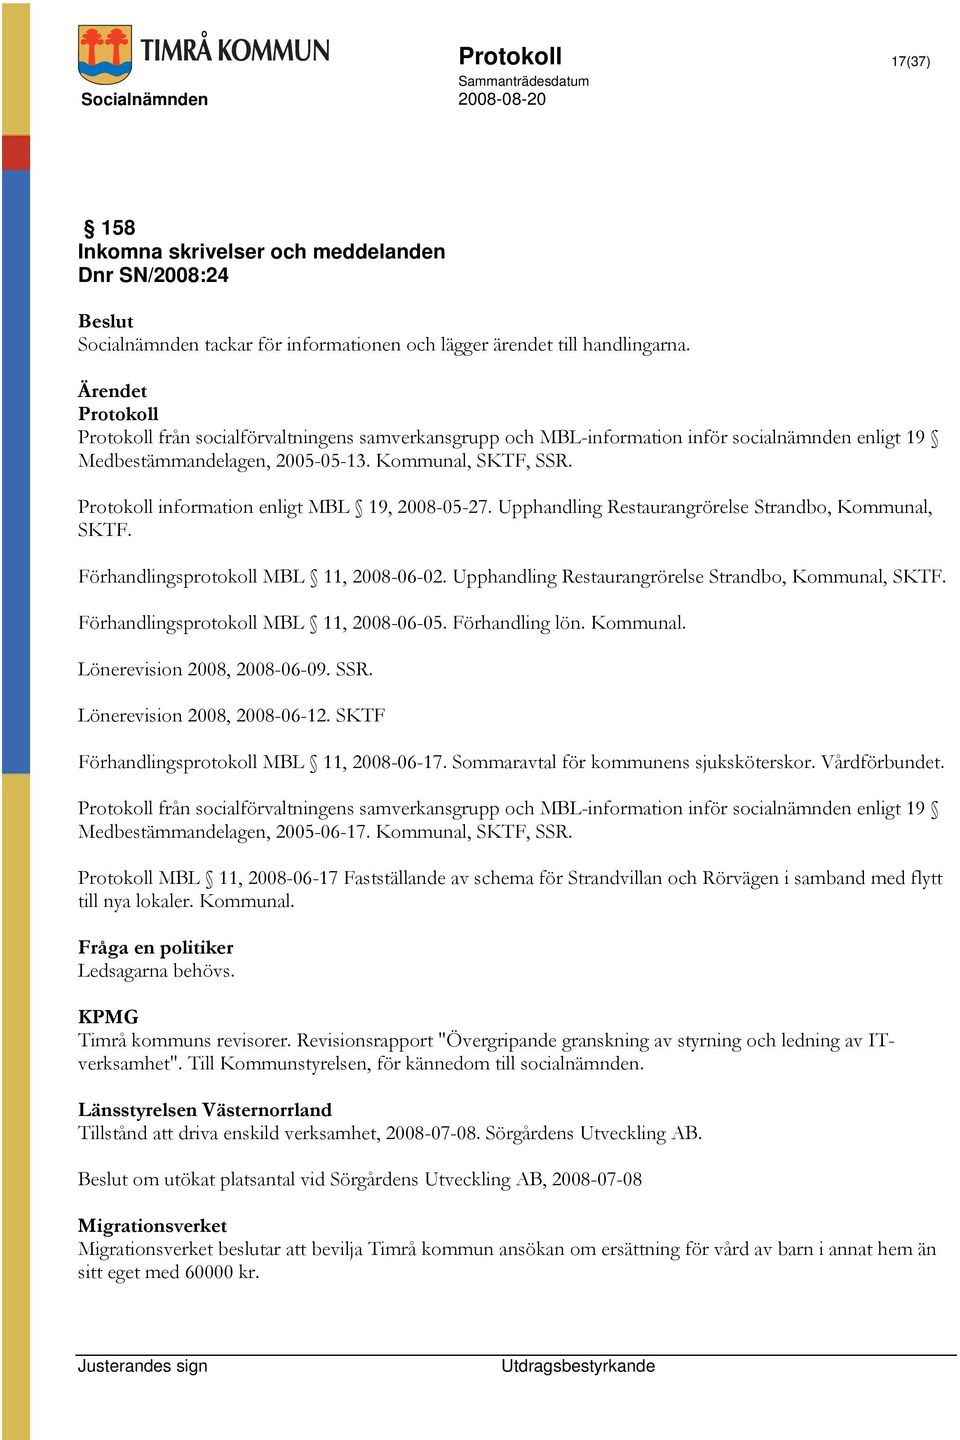 Protokoll information enligt MBL 19, 2008-05-27. Upphandling Restaurangrörelse Strandbo, Kommunal, SKTF. Förhandlingsprotokoll MBL 11, 2008-06-02.